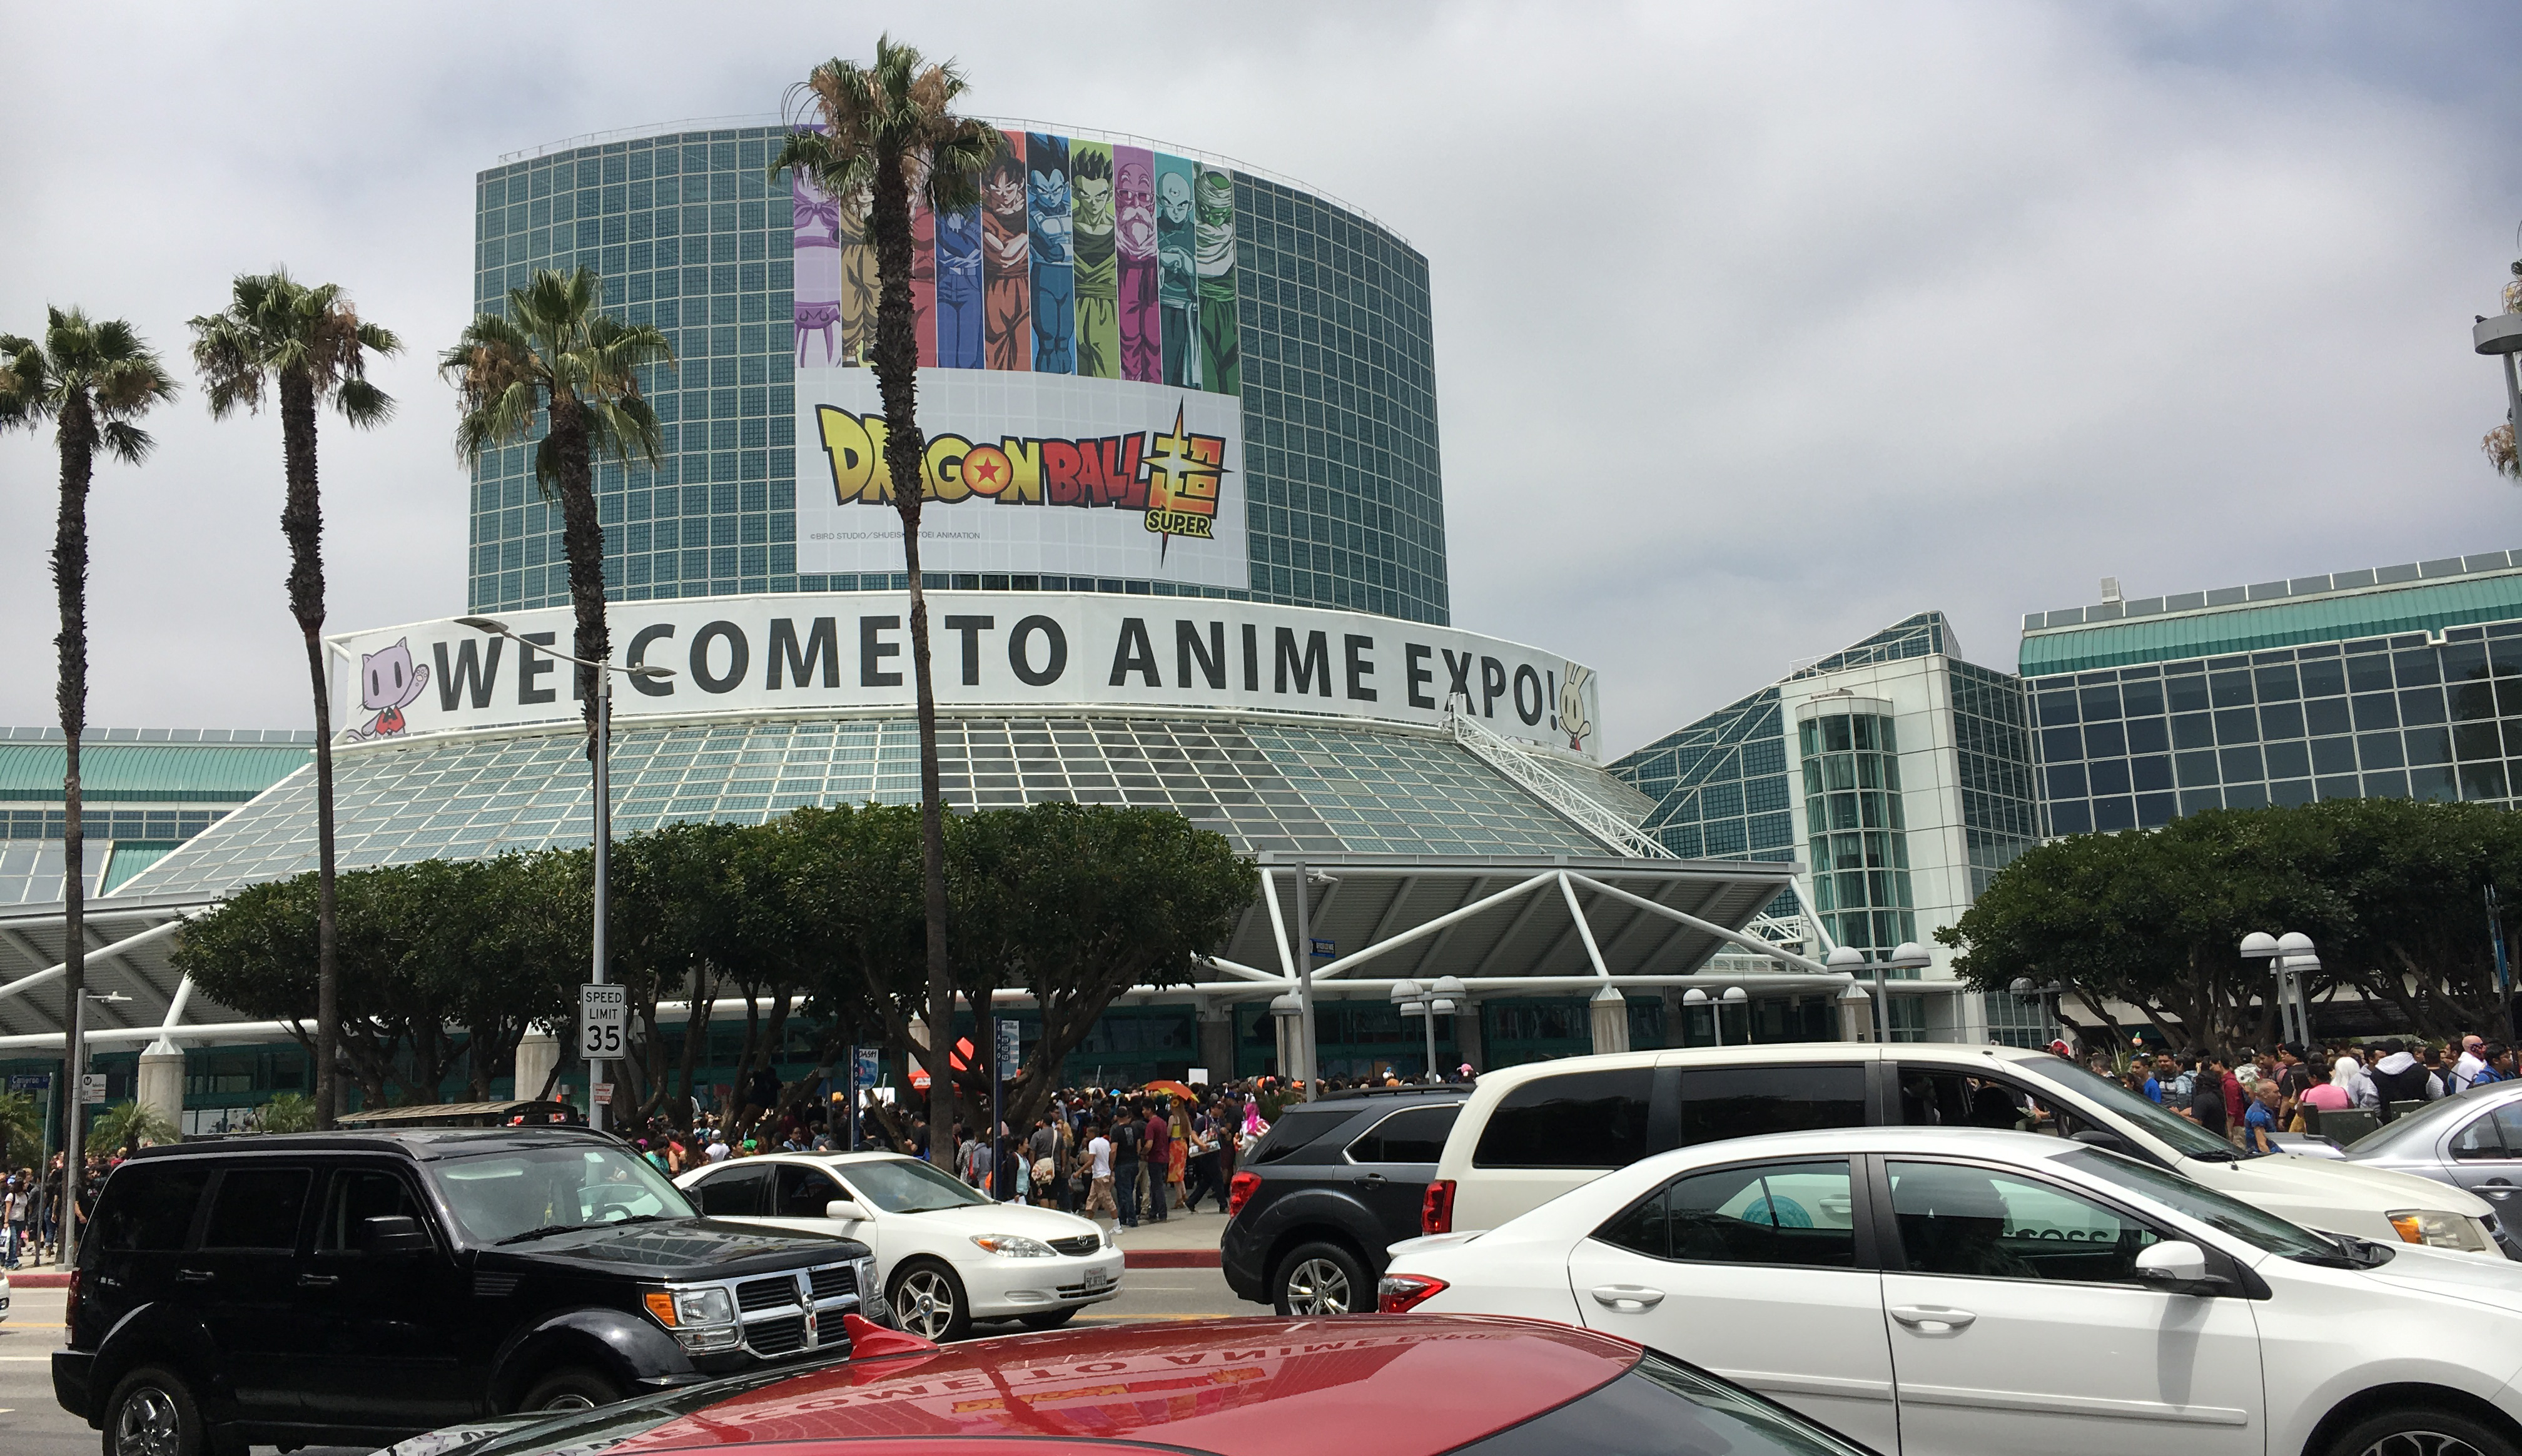 AnimeLand - San Diego Anime Con